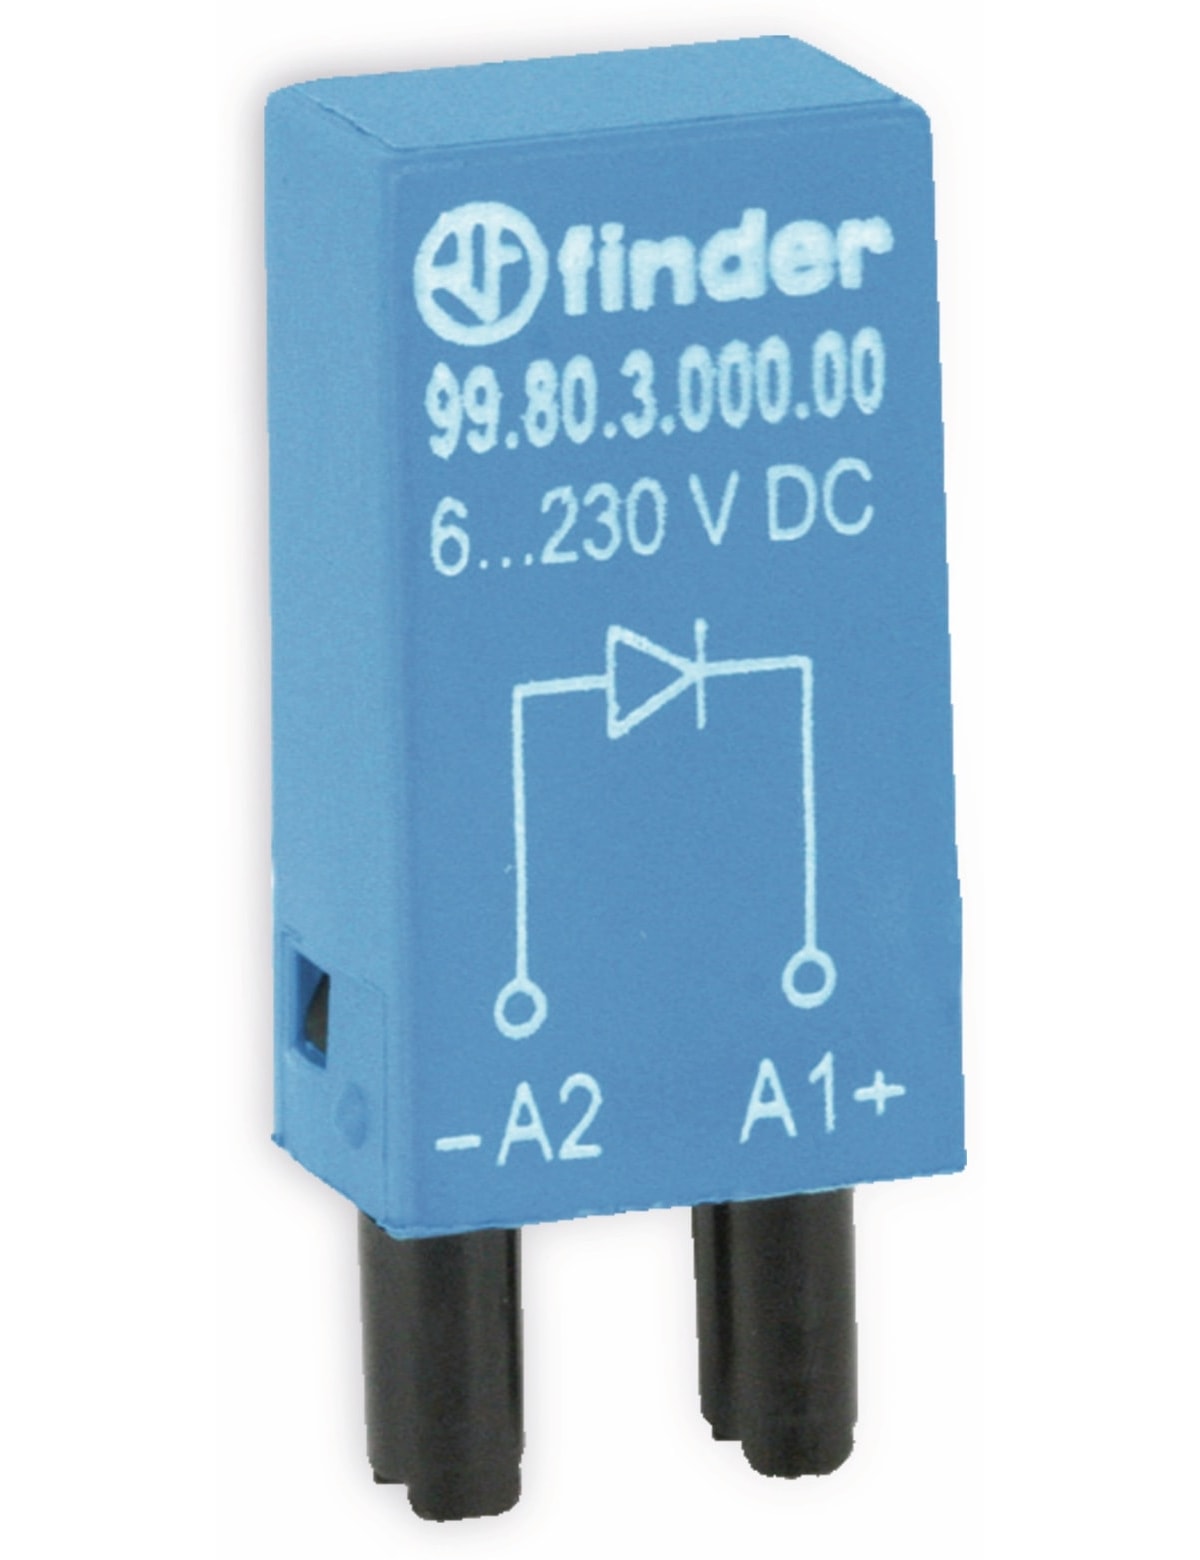 FINDER Steckmodul / Freilaufdiode, 99.80.3.000.00, für Serie 94, 95